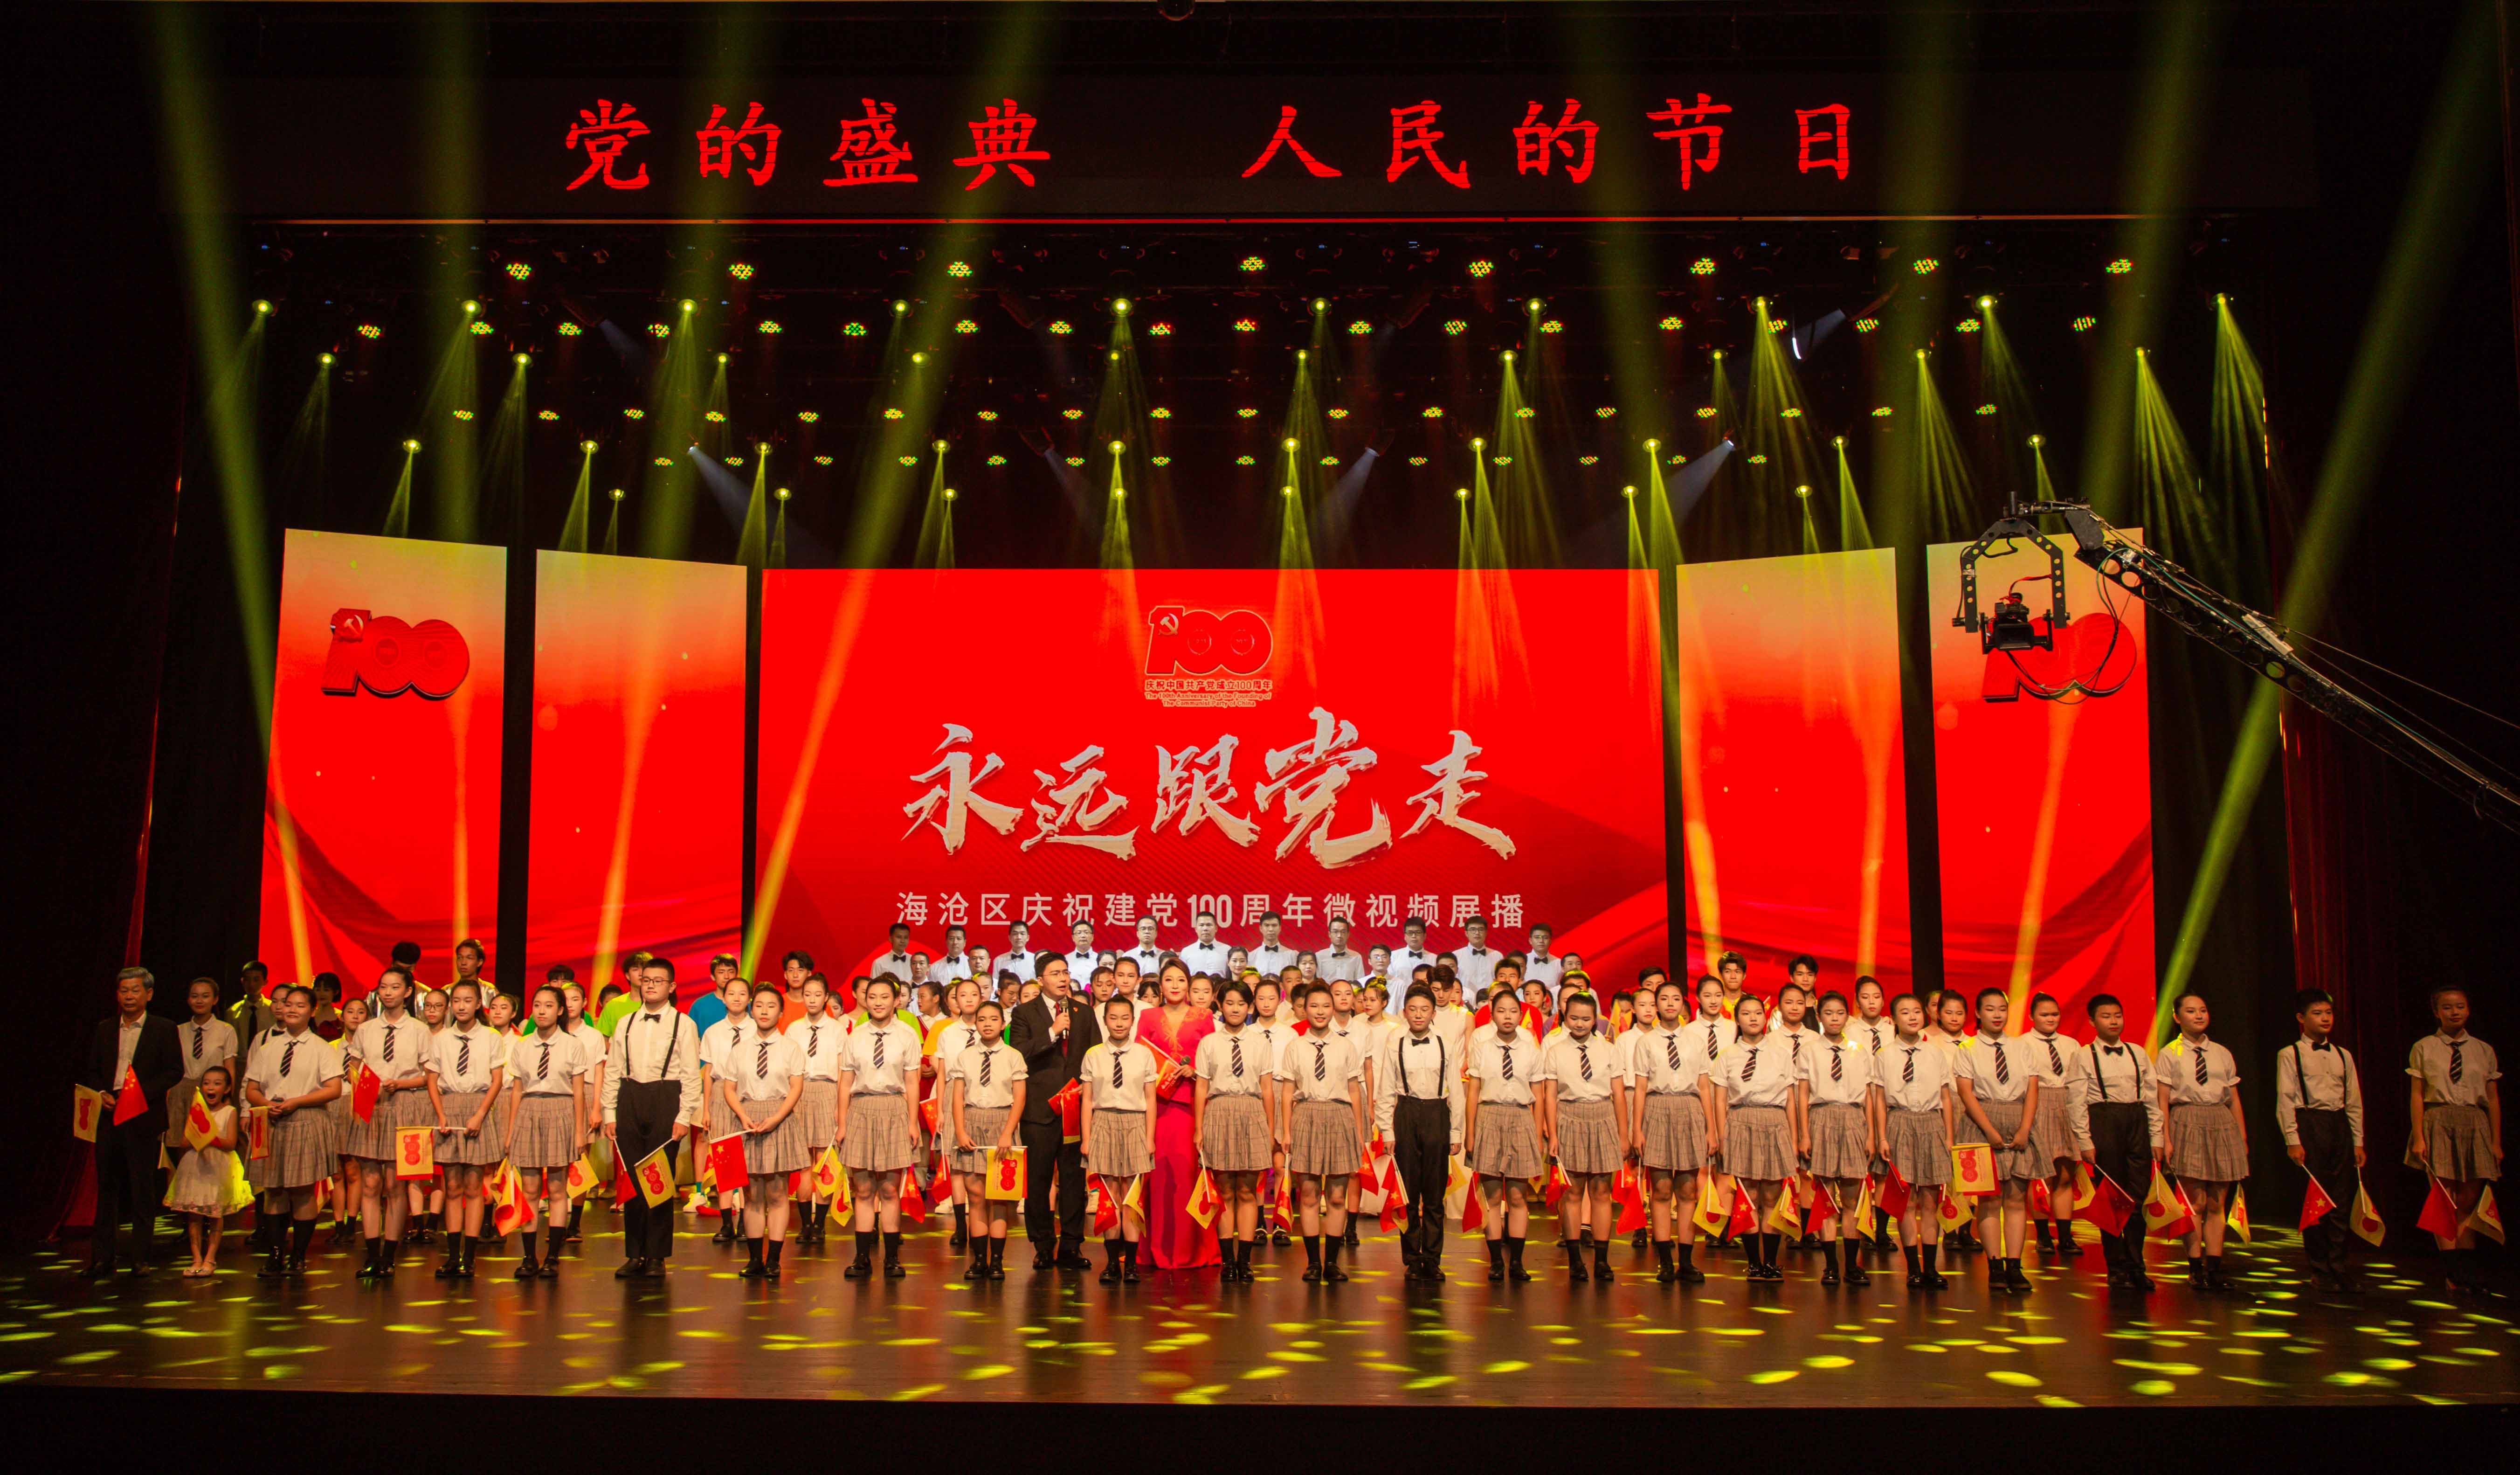 海滄區慶祝建黨100周年微視頻展播文藝晚會